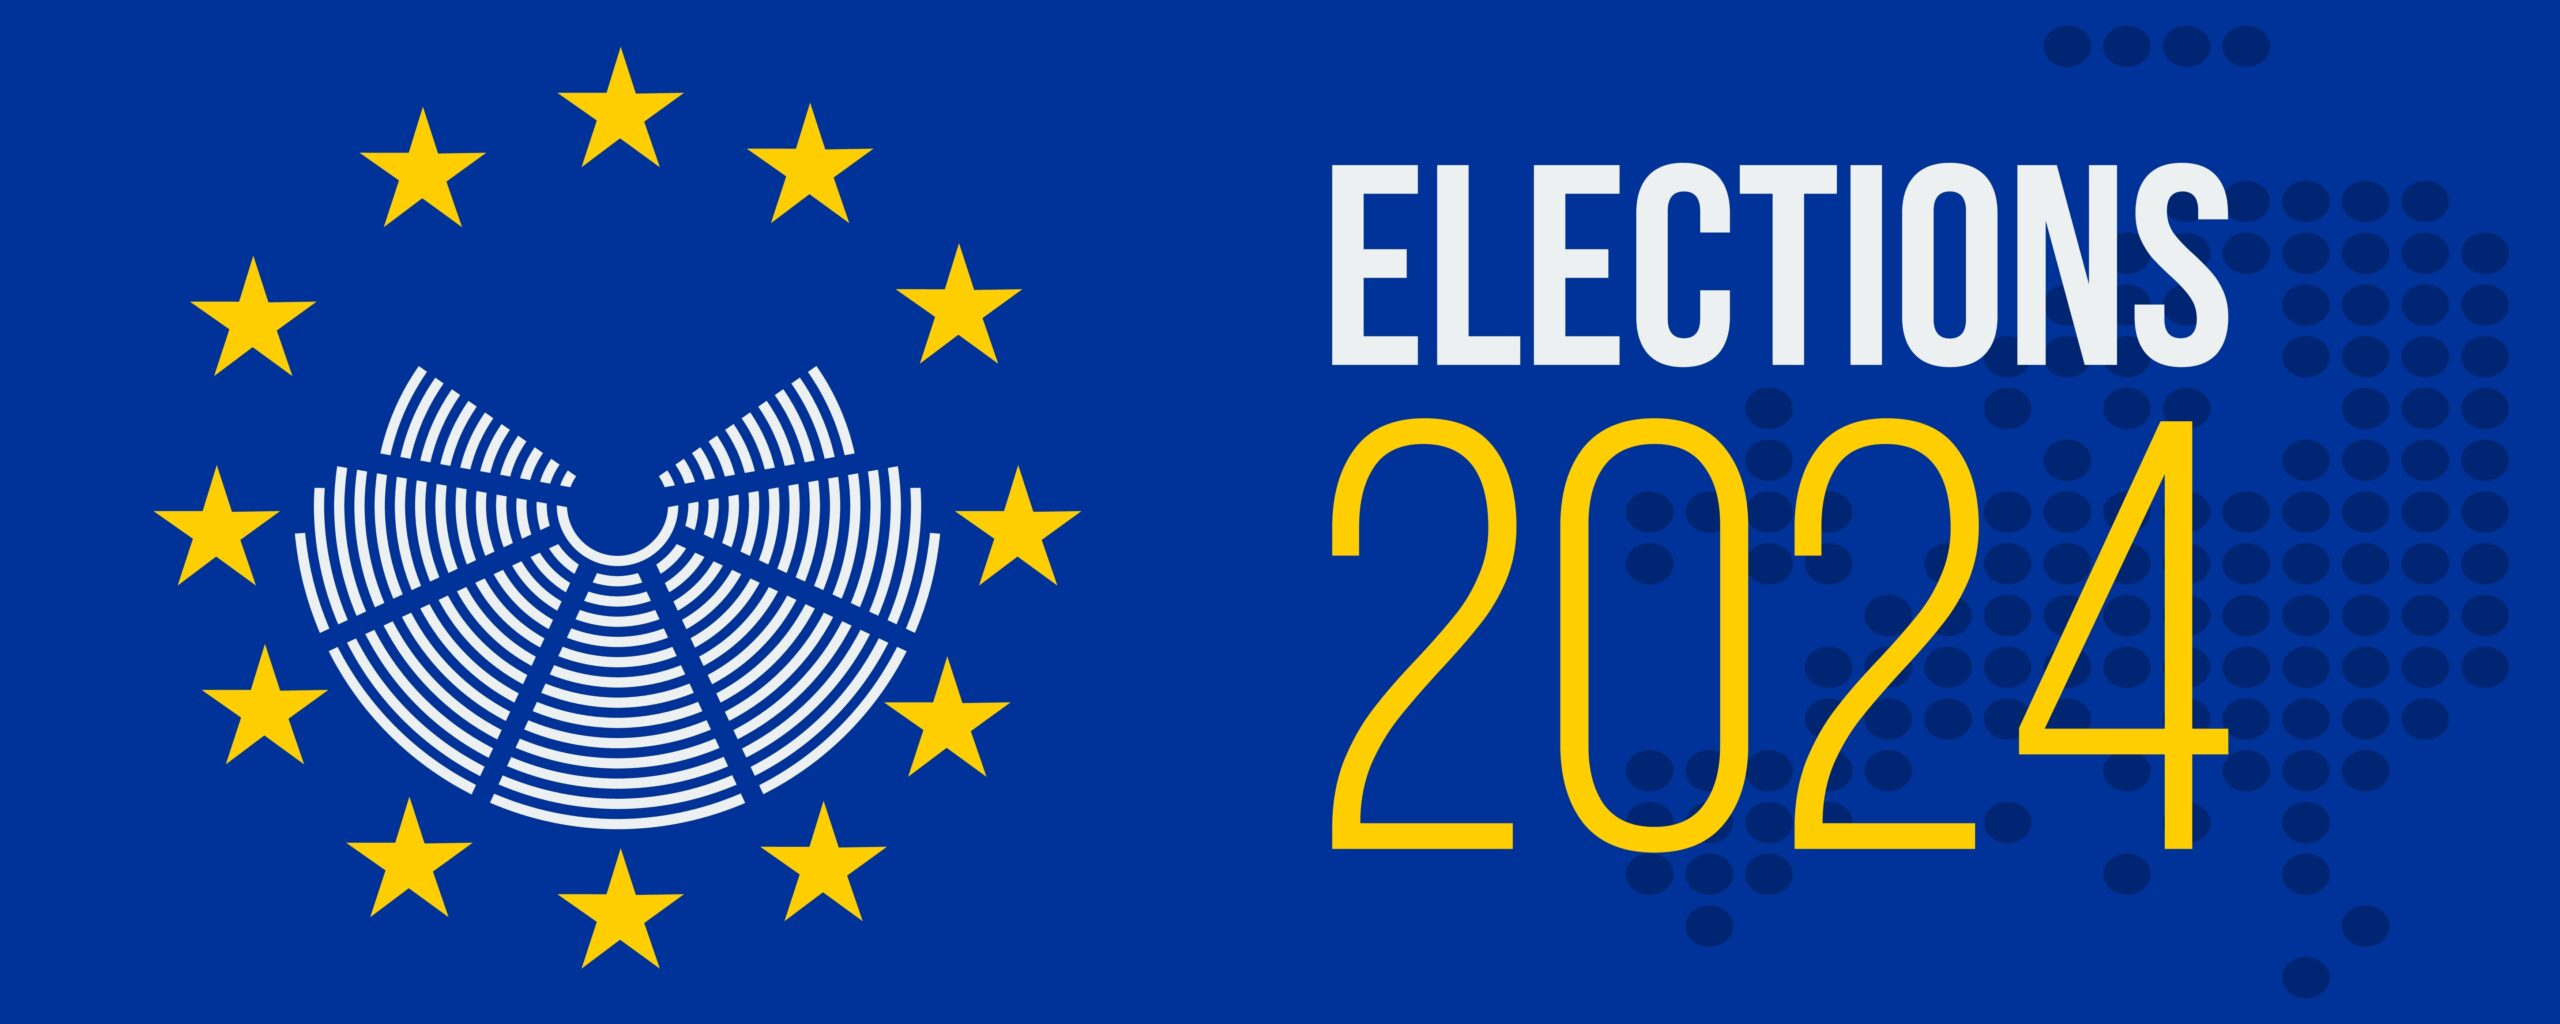 2024年欧州議会選挙について教えてください